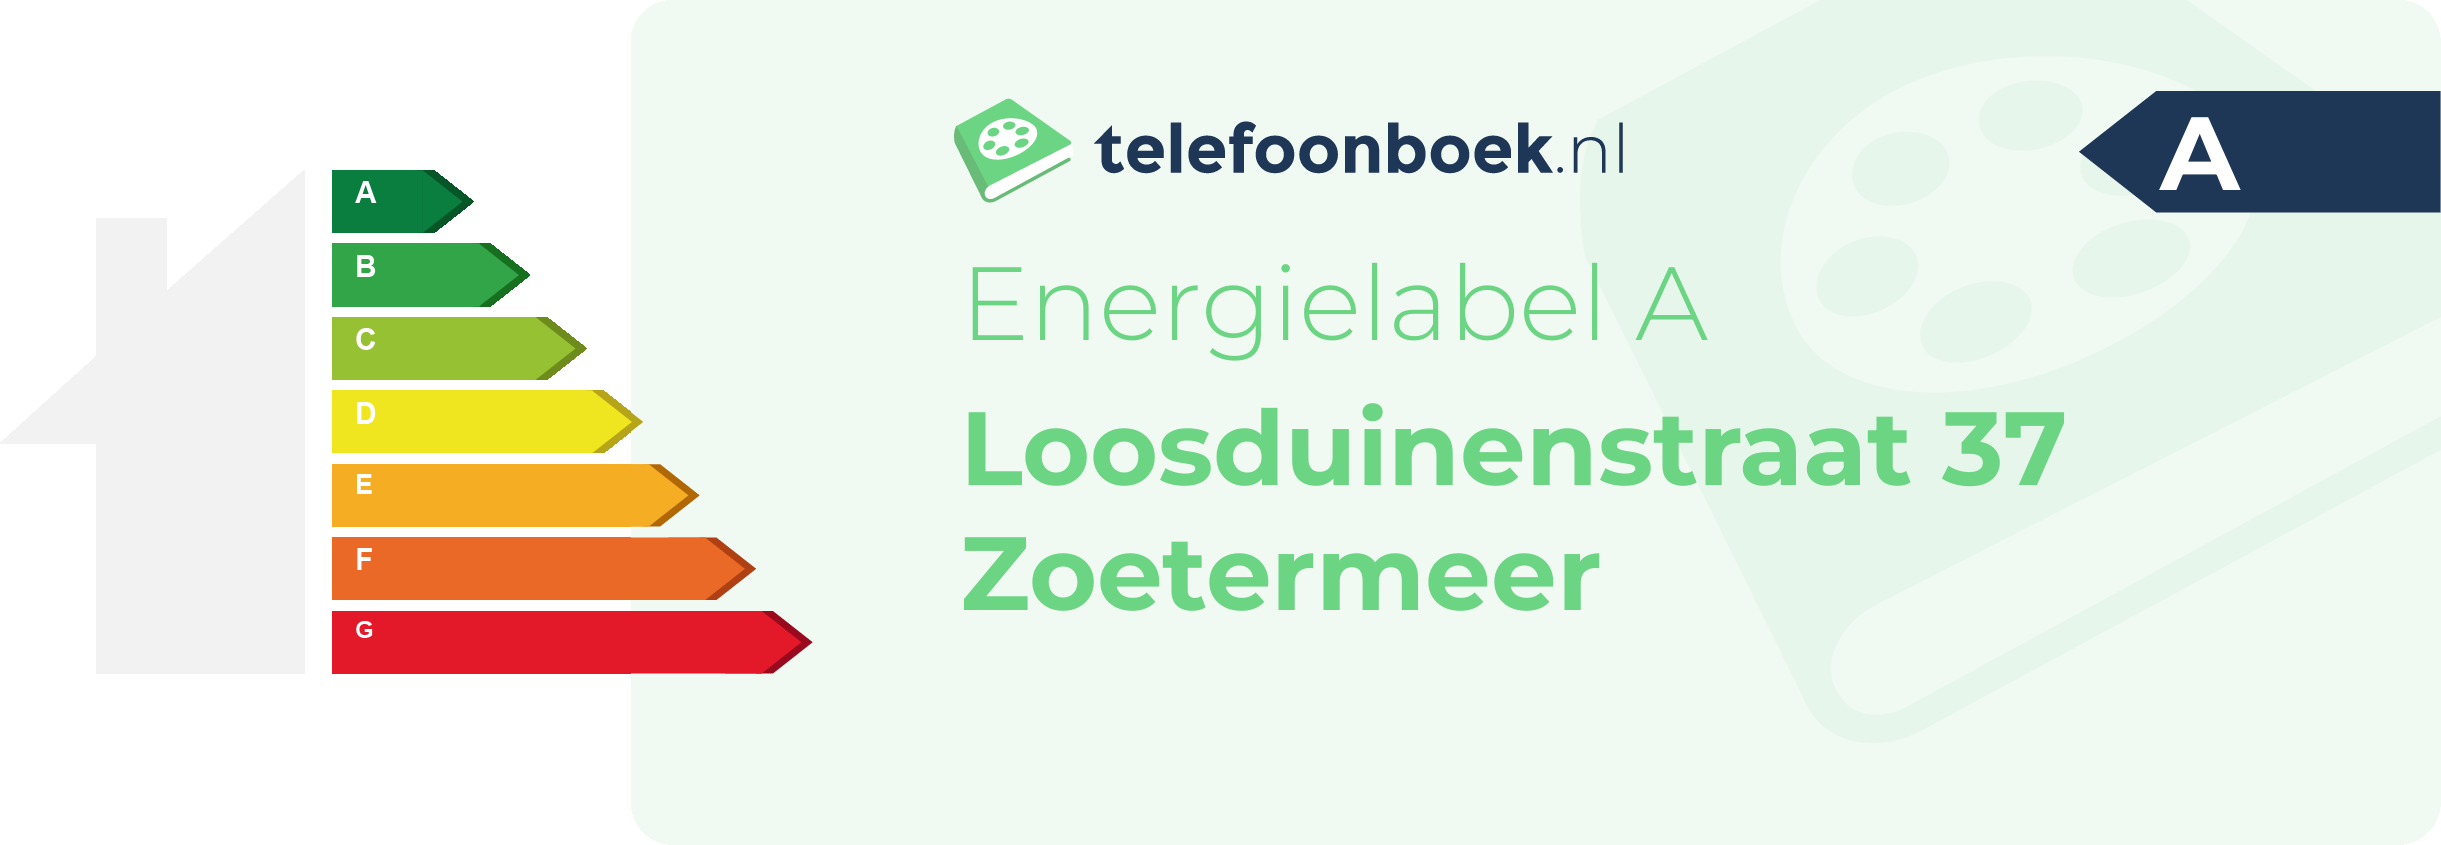 Energielabel Loosduinenstraat 37 Zoetermeer